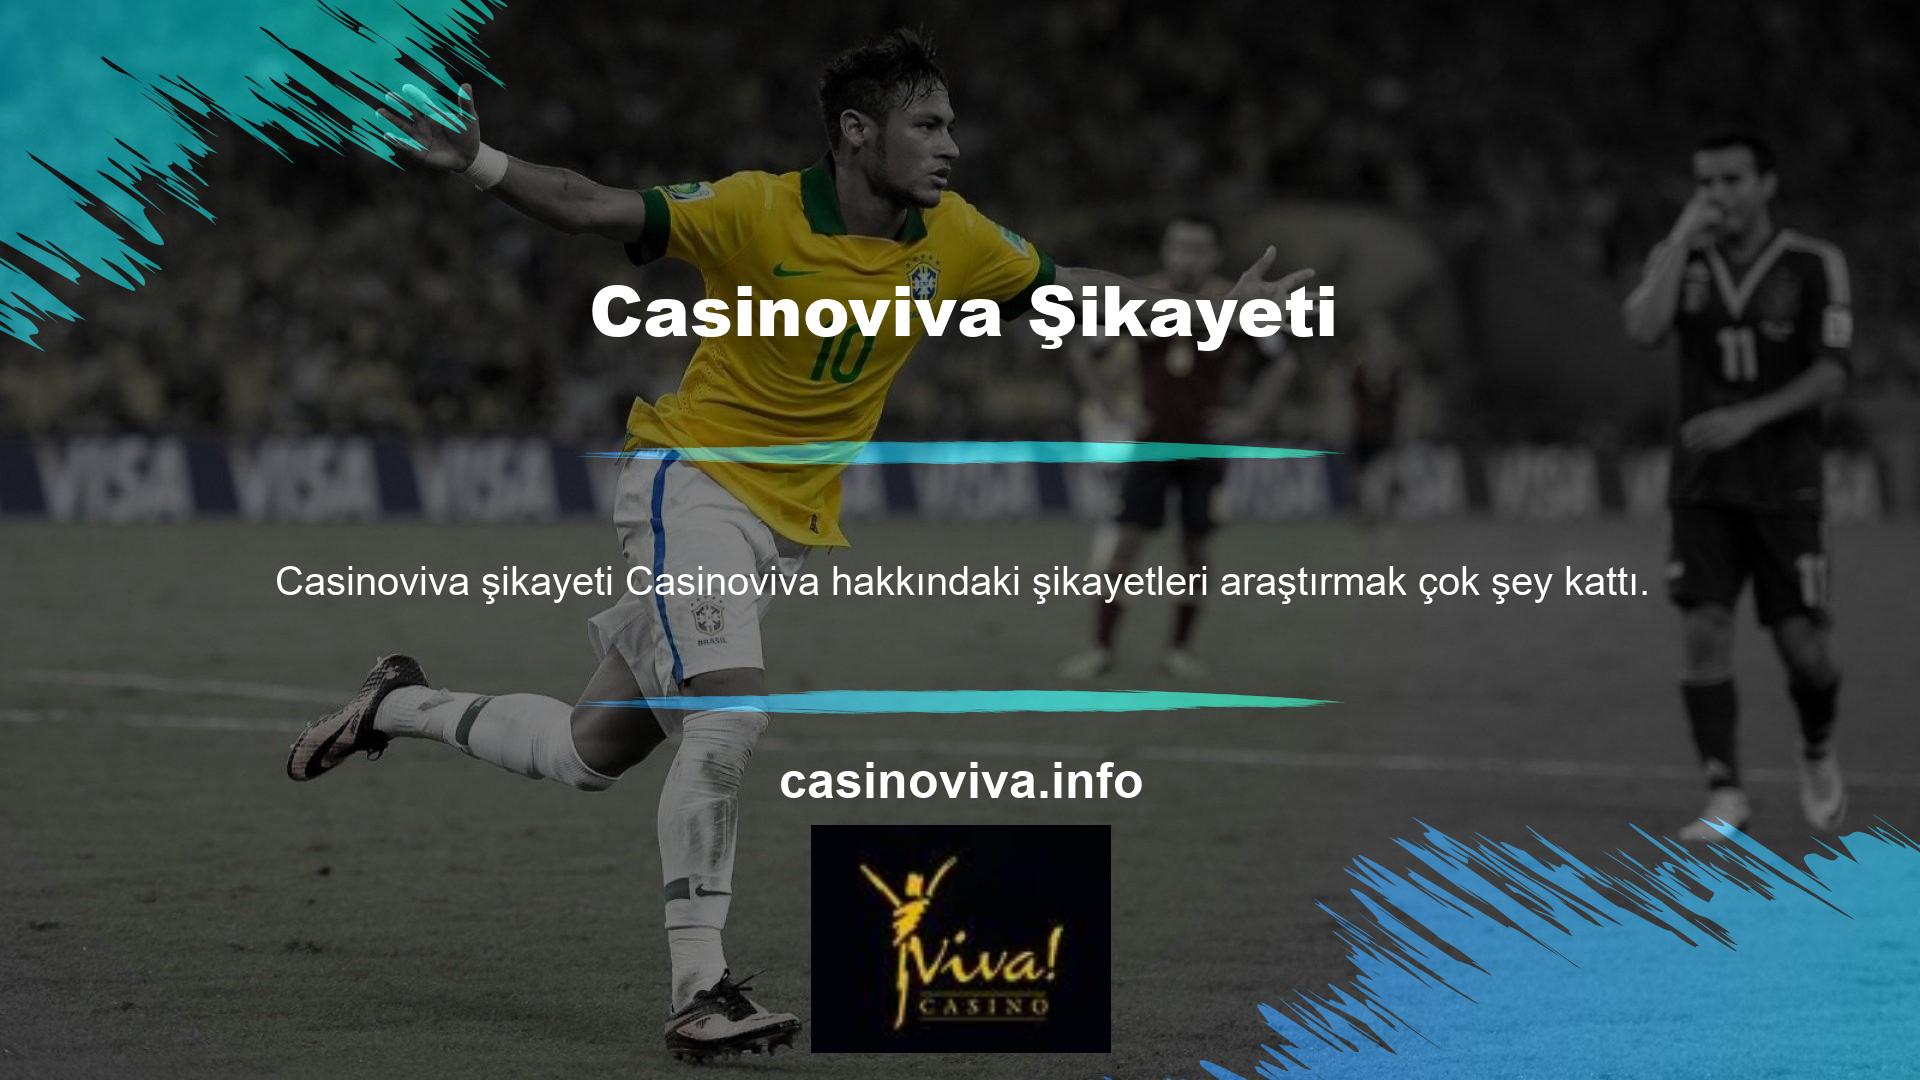 Ancak, Casinoviva web sitesine yönelik şikayetler su yüzüne çıkmış gibi görünmüyor